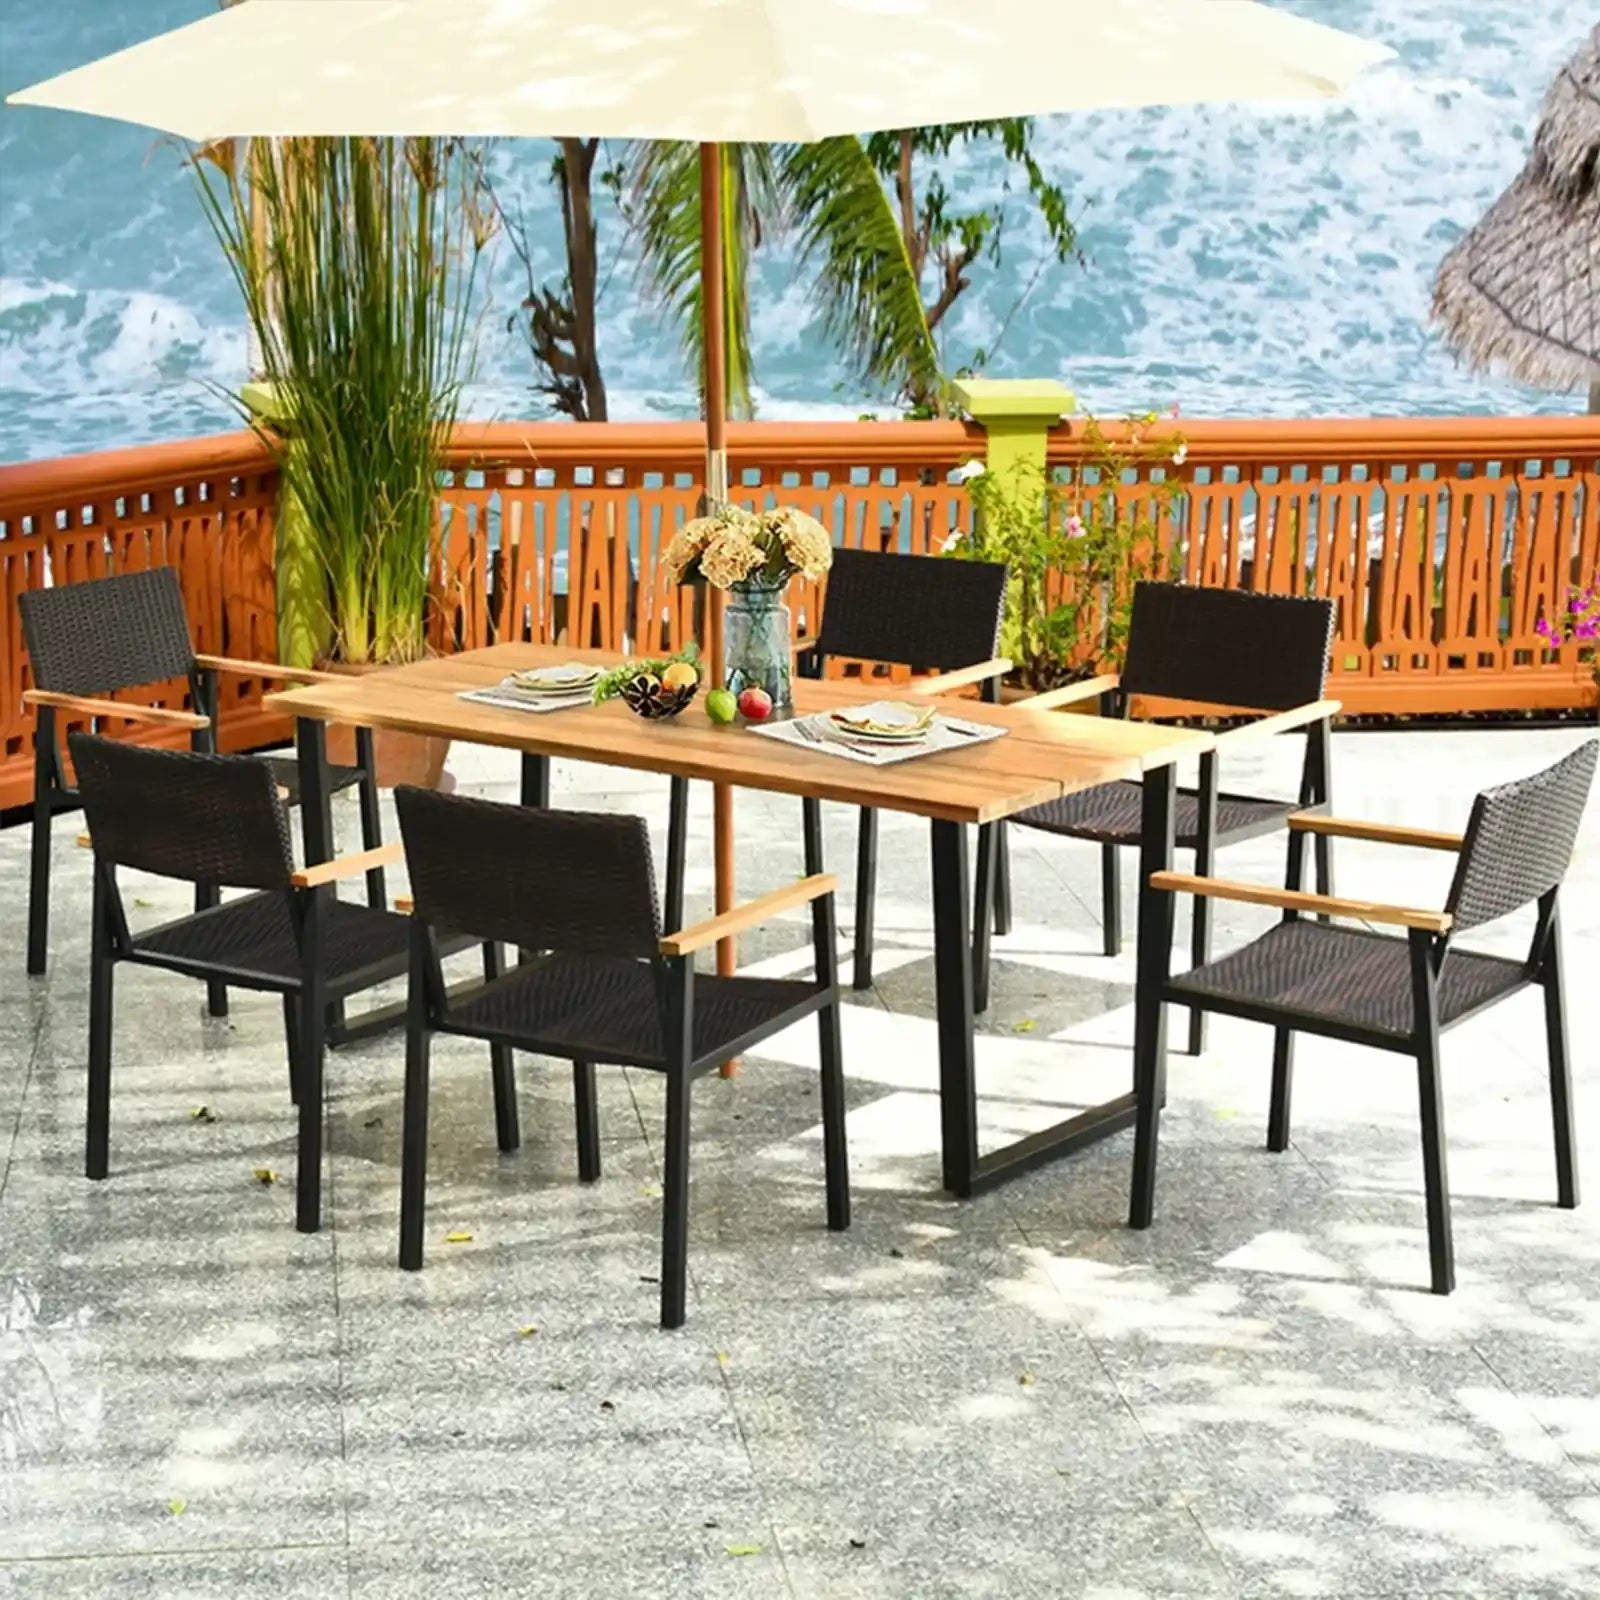 Juego de comedor al aire libre elegante y duradero | Muebles resistentes a la intemperie para jardines, patios y piscinas | Juego de 7 piezas con orificio para paraguas